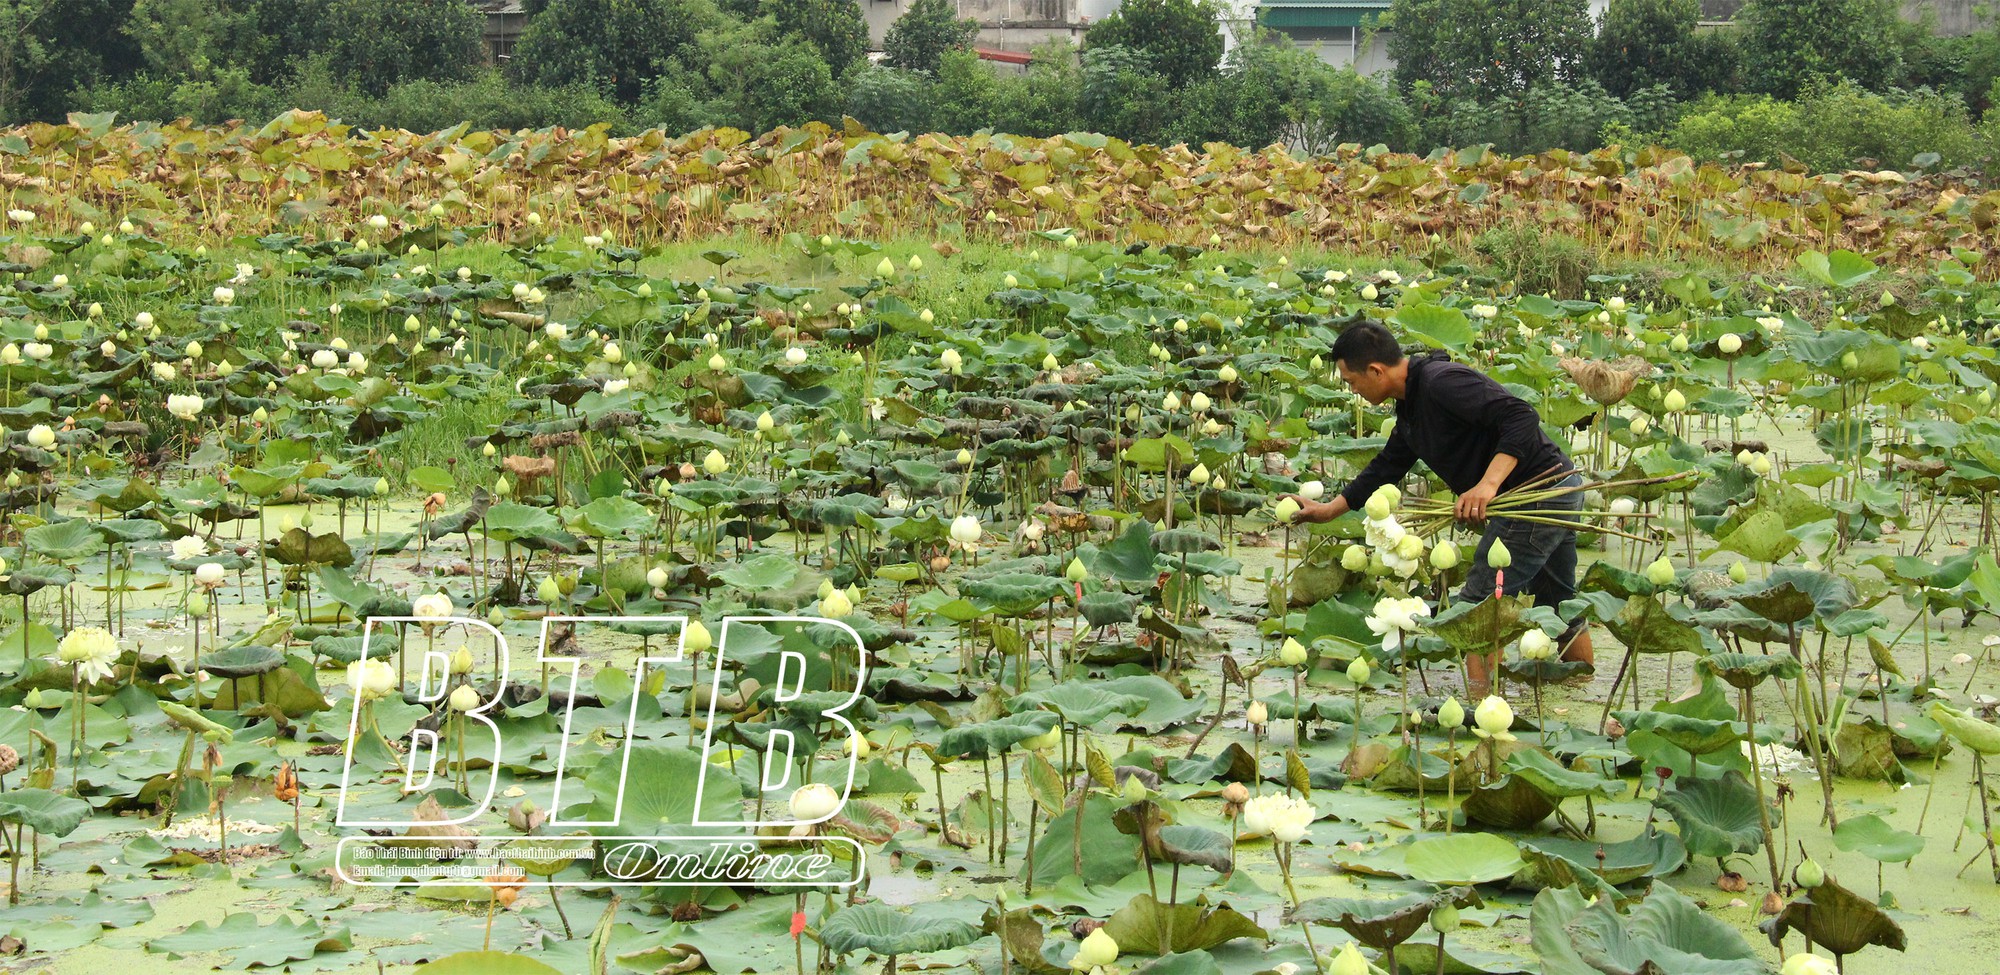 Gom ruộng của 40 hộ trồng loài hoa mọc dưới bùn, ông nông dân Thái Bình có thu nhập khá  - Ảnh 1.